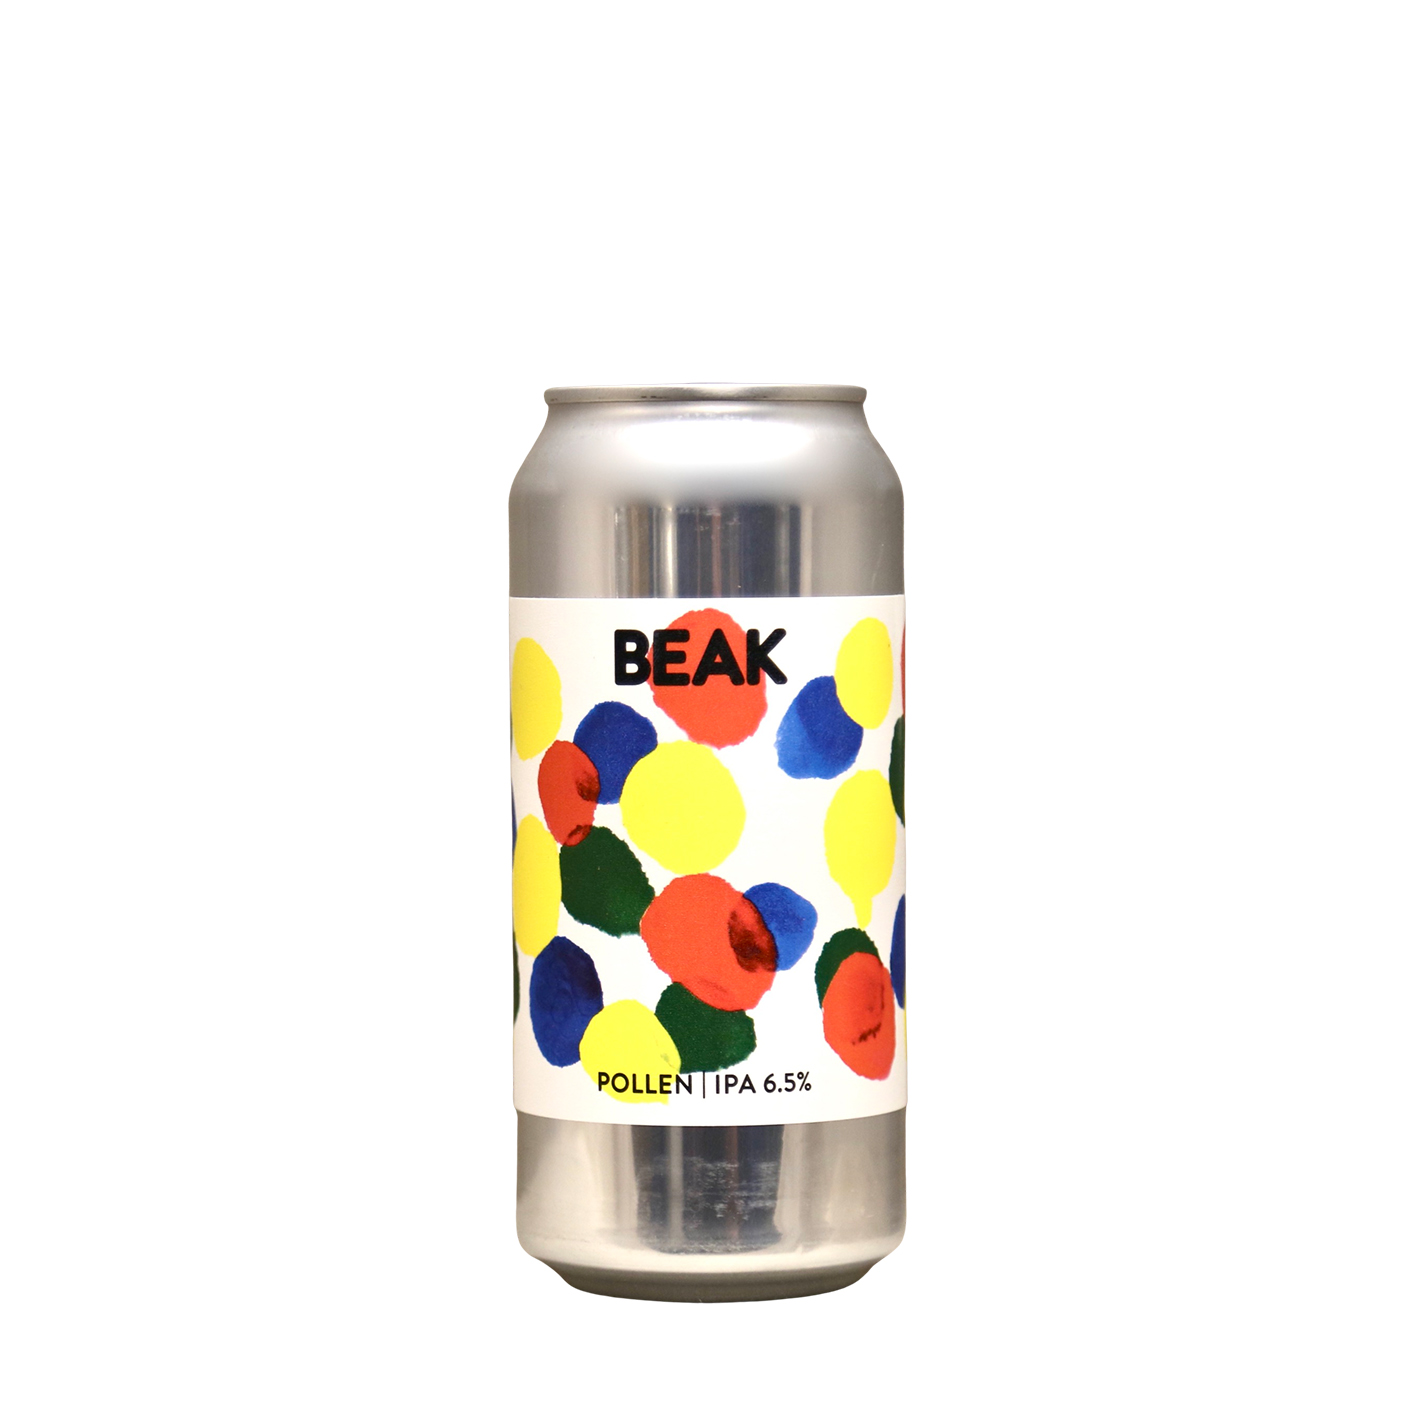 Beak Brewery – Pollen IPA